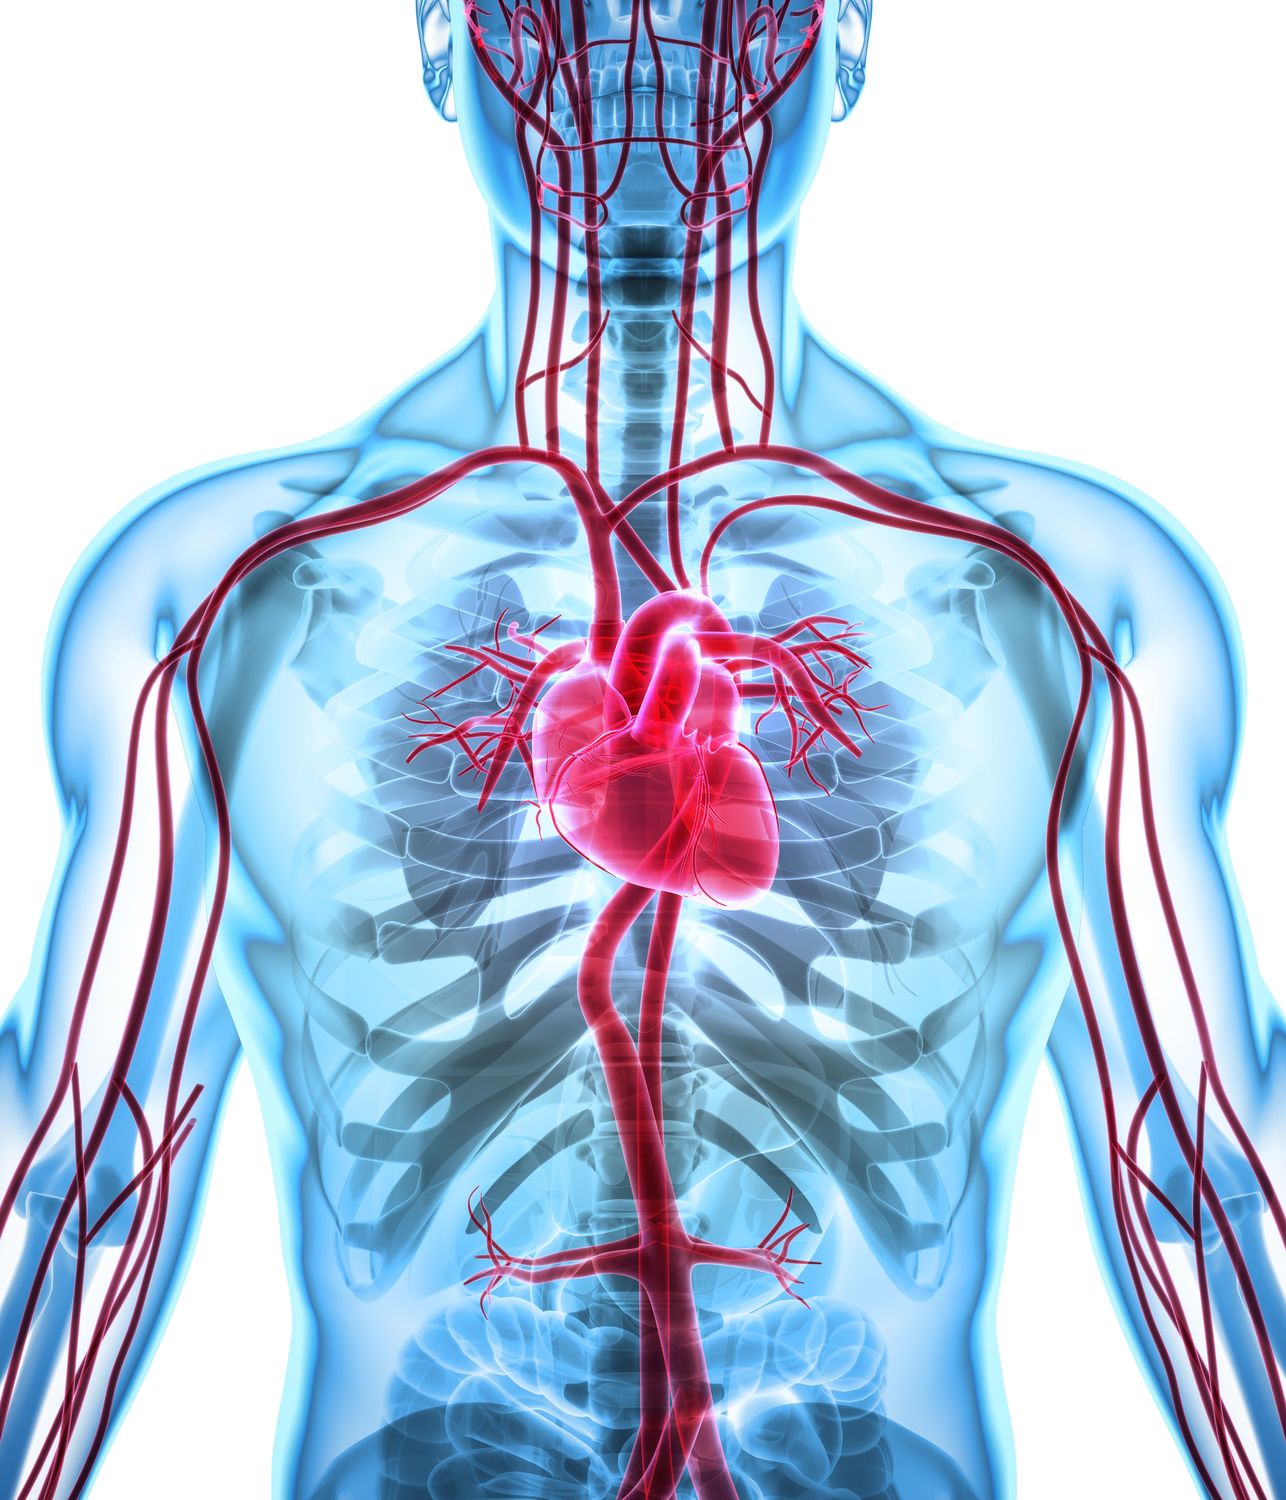 Abbildung des Herz-Kreislauf-Systems